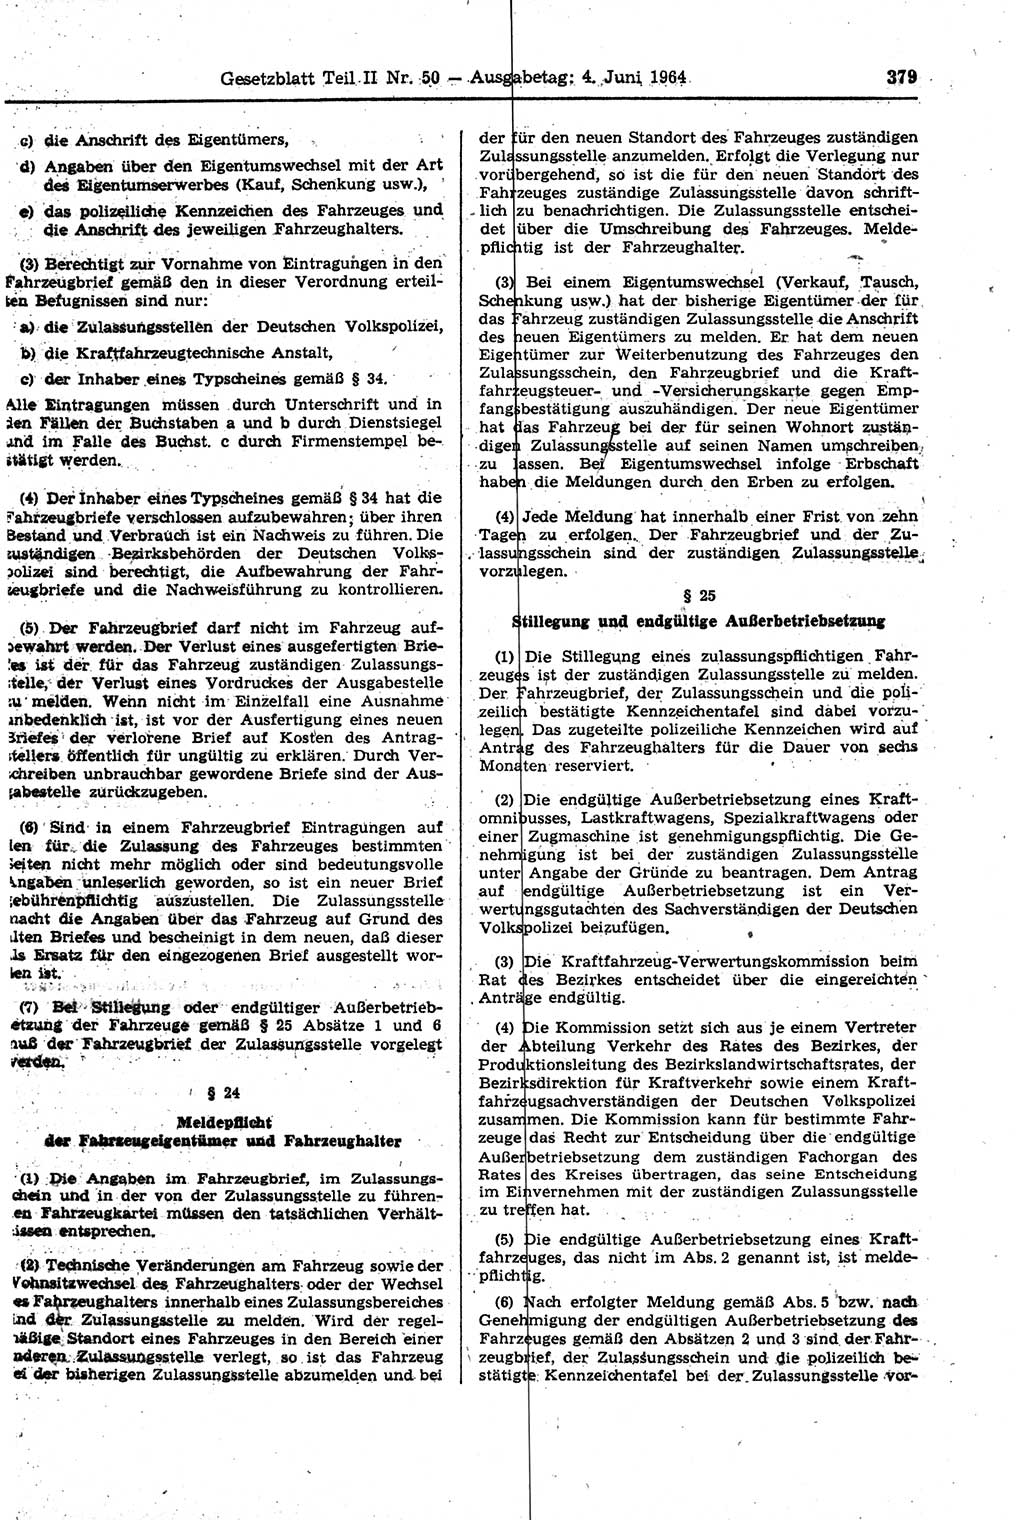 Gesetzblatt (GBl.) der Deutschen Demokratischen Republik (DDR) Teil ⅠⅠ 1964, Seite 379 (GBl. DDR ⅠⅠ 1964, S. 379)